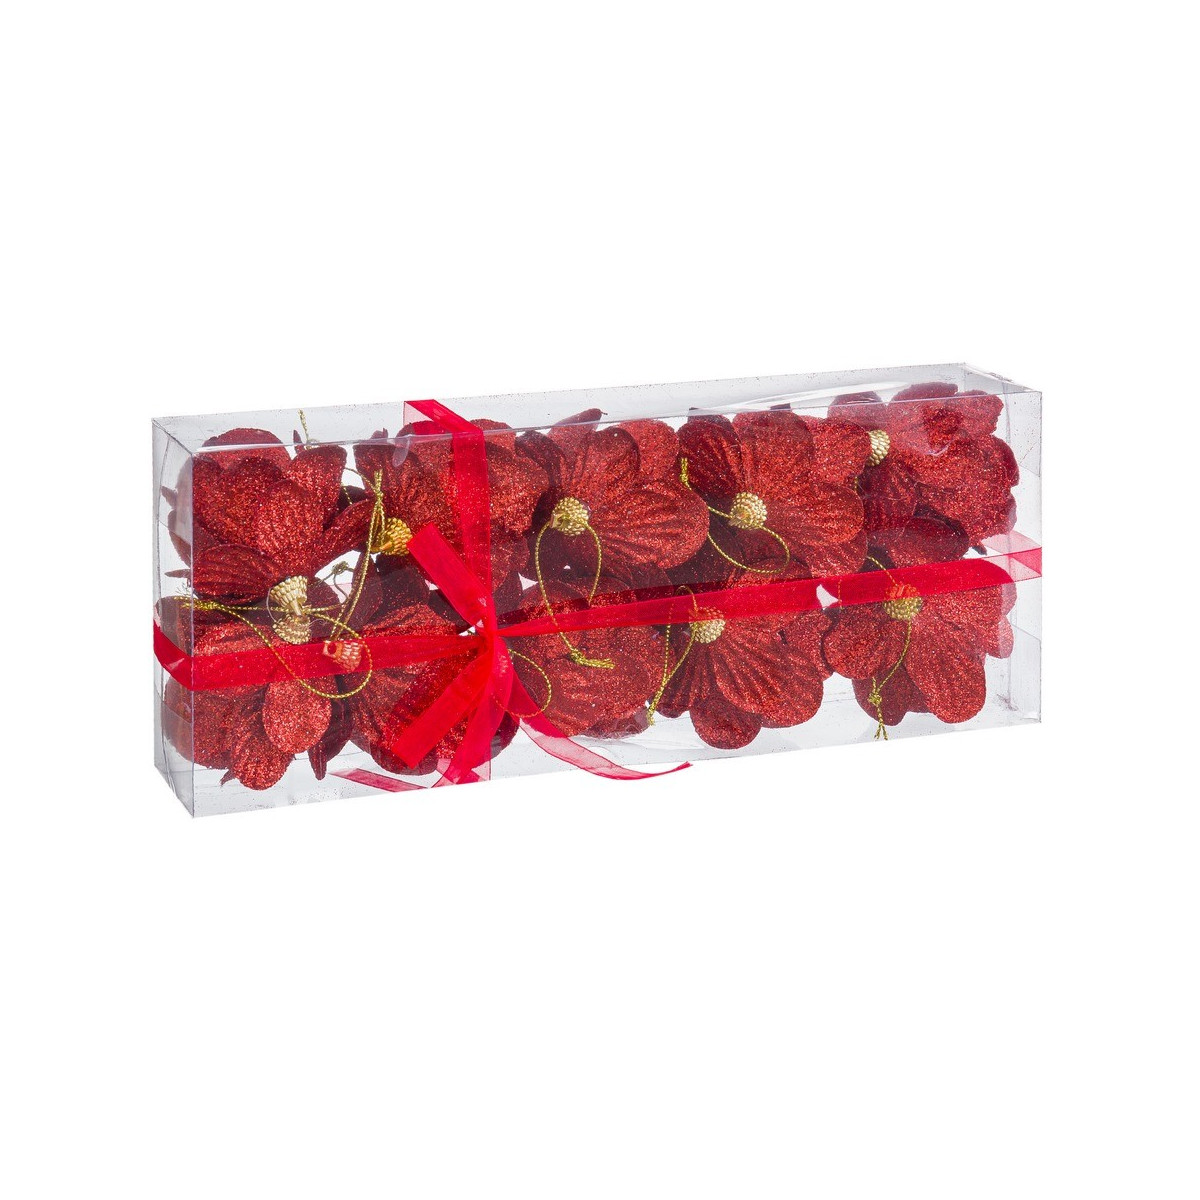 S 10 bolas de abacaxi de espuma vermelha 6 x 6 x 6 cm